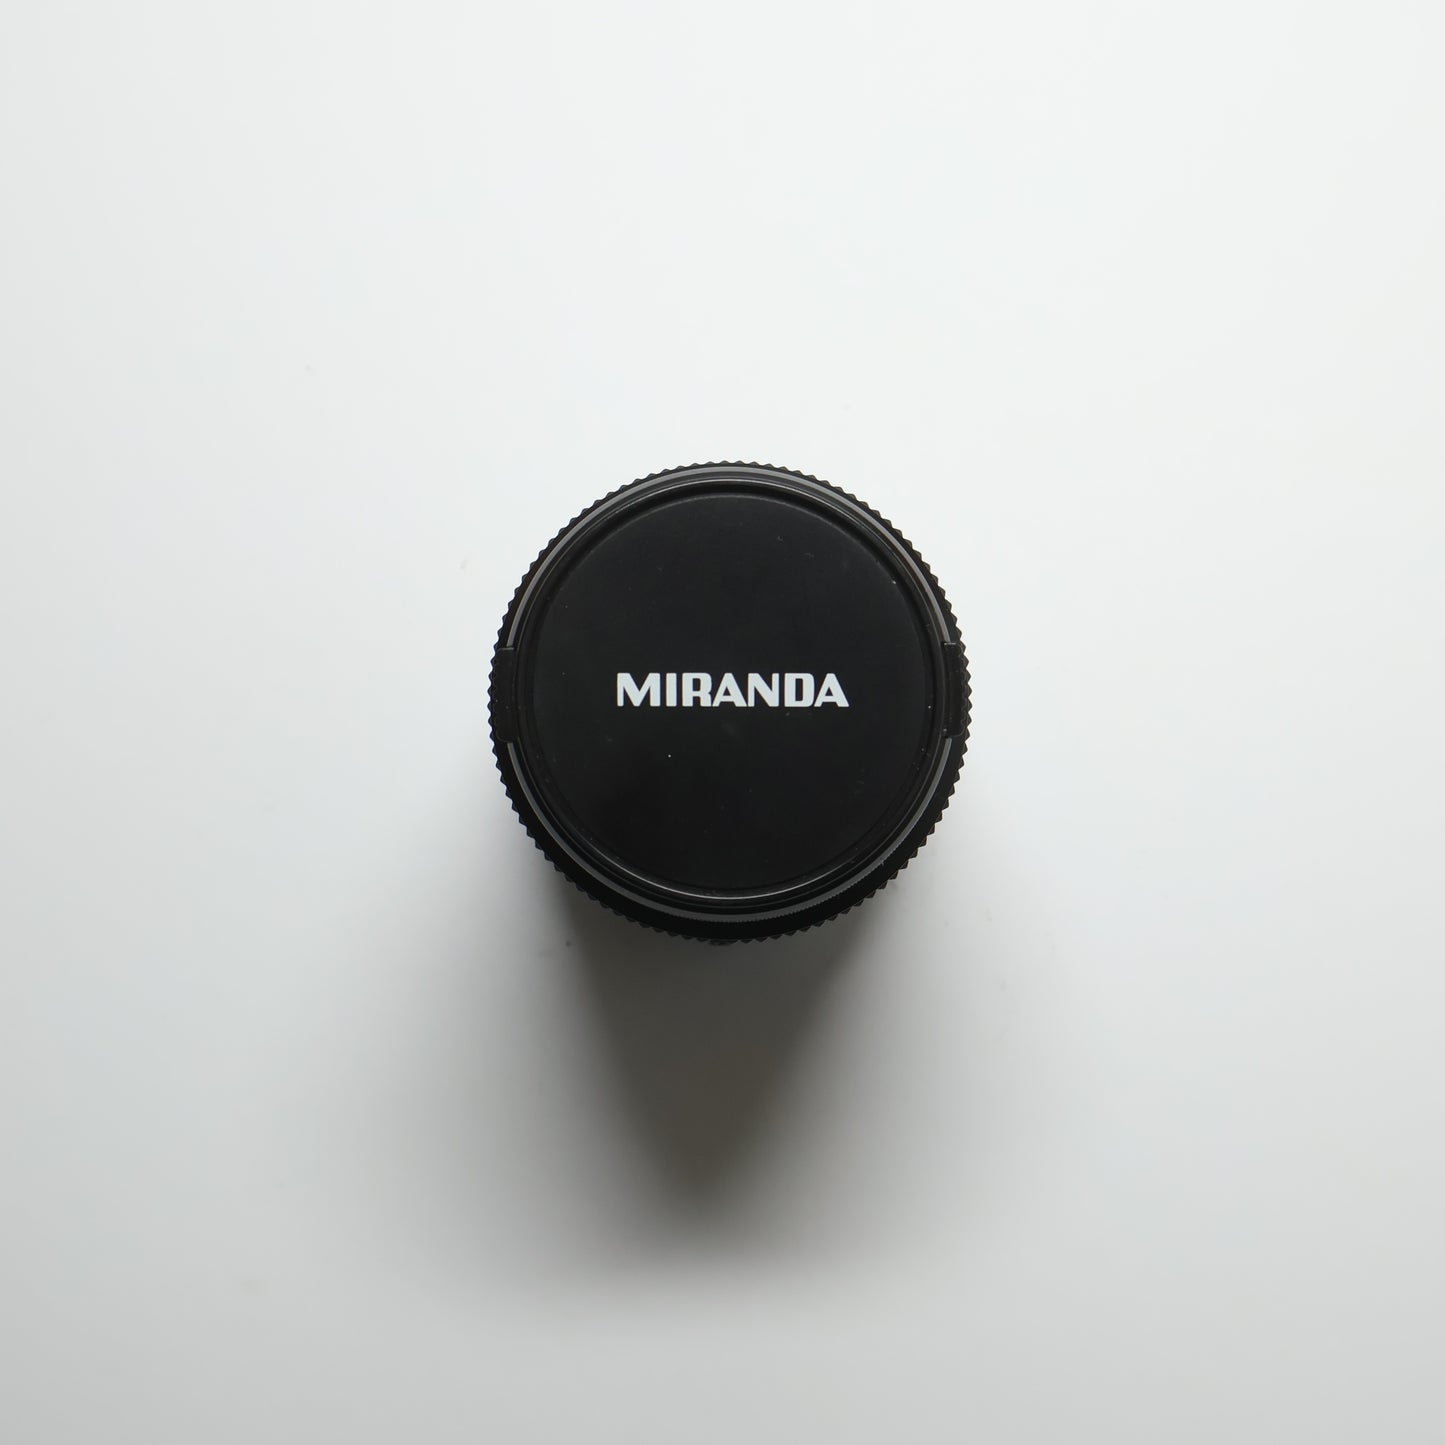 Miranda 35-70mm lens for Pentax